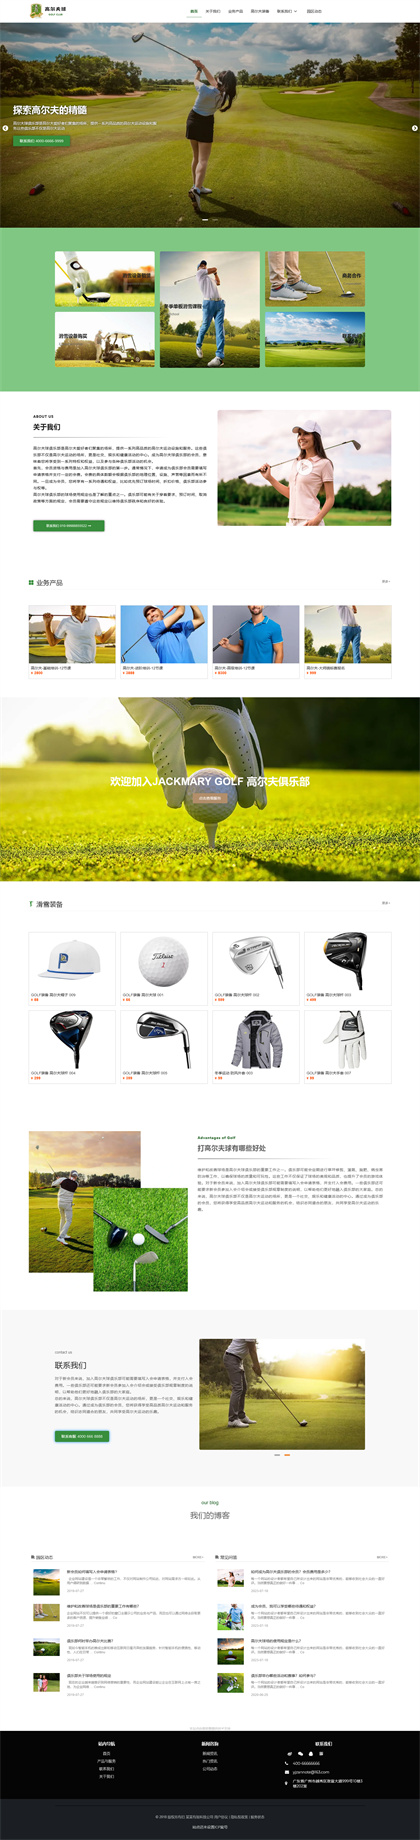 高尔夫球场-GOLF CLUB-高尔夫俱乐部-高尔夫球会-高尔夫度假村-网站模板网站模板预览图片